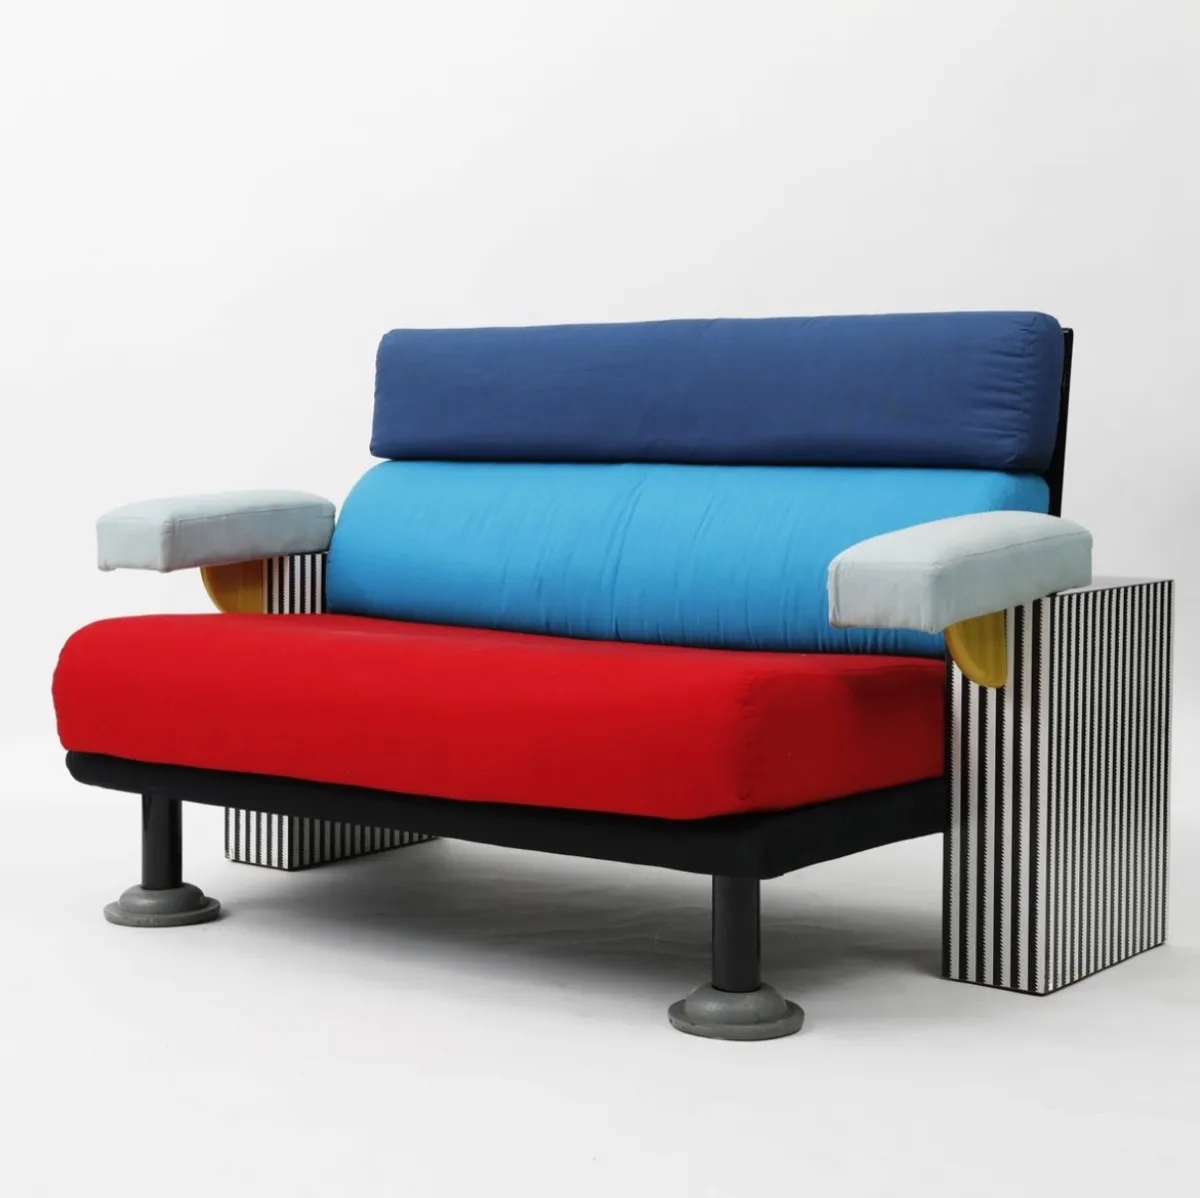 memphis design chair, 80s interior design